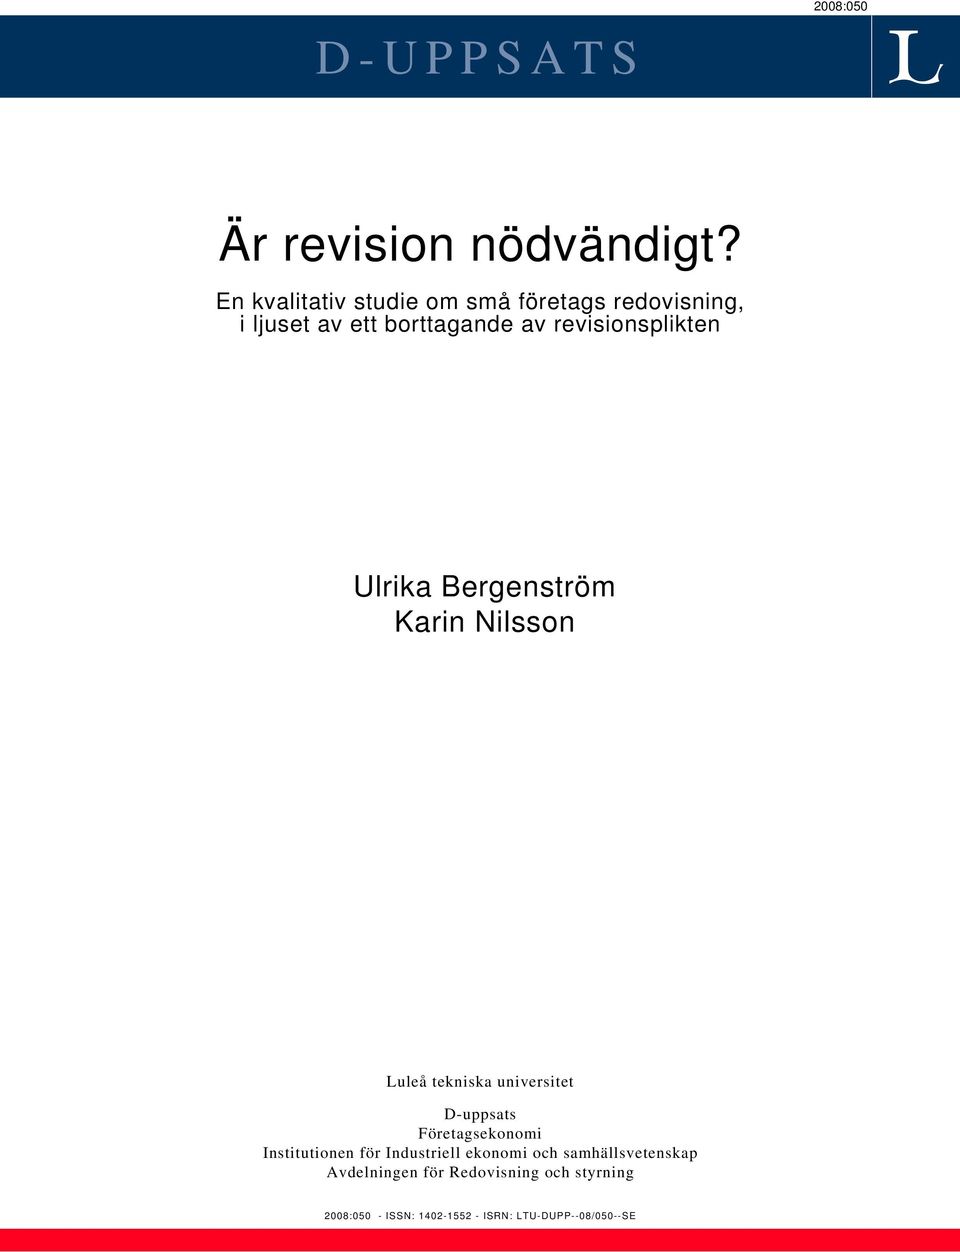 revisionsplikten Ulrika Bergenström Karin Nilsson Luleå tekniska universitet D-uppsats